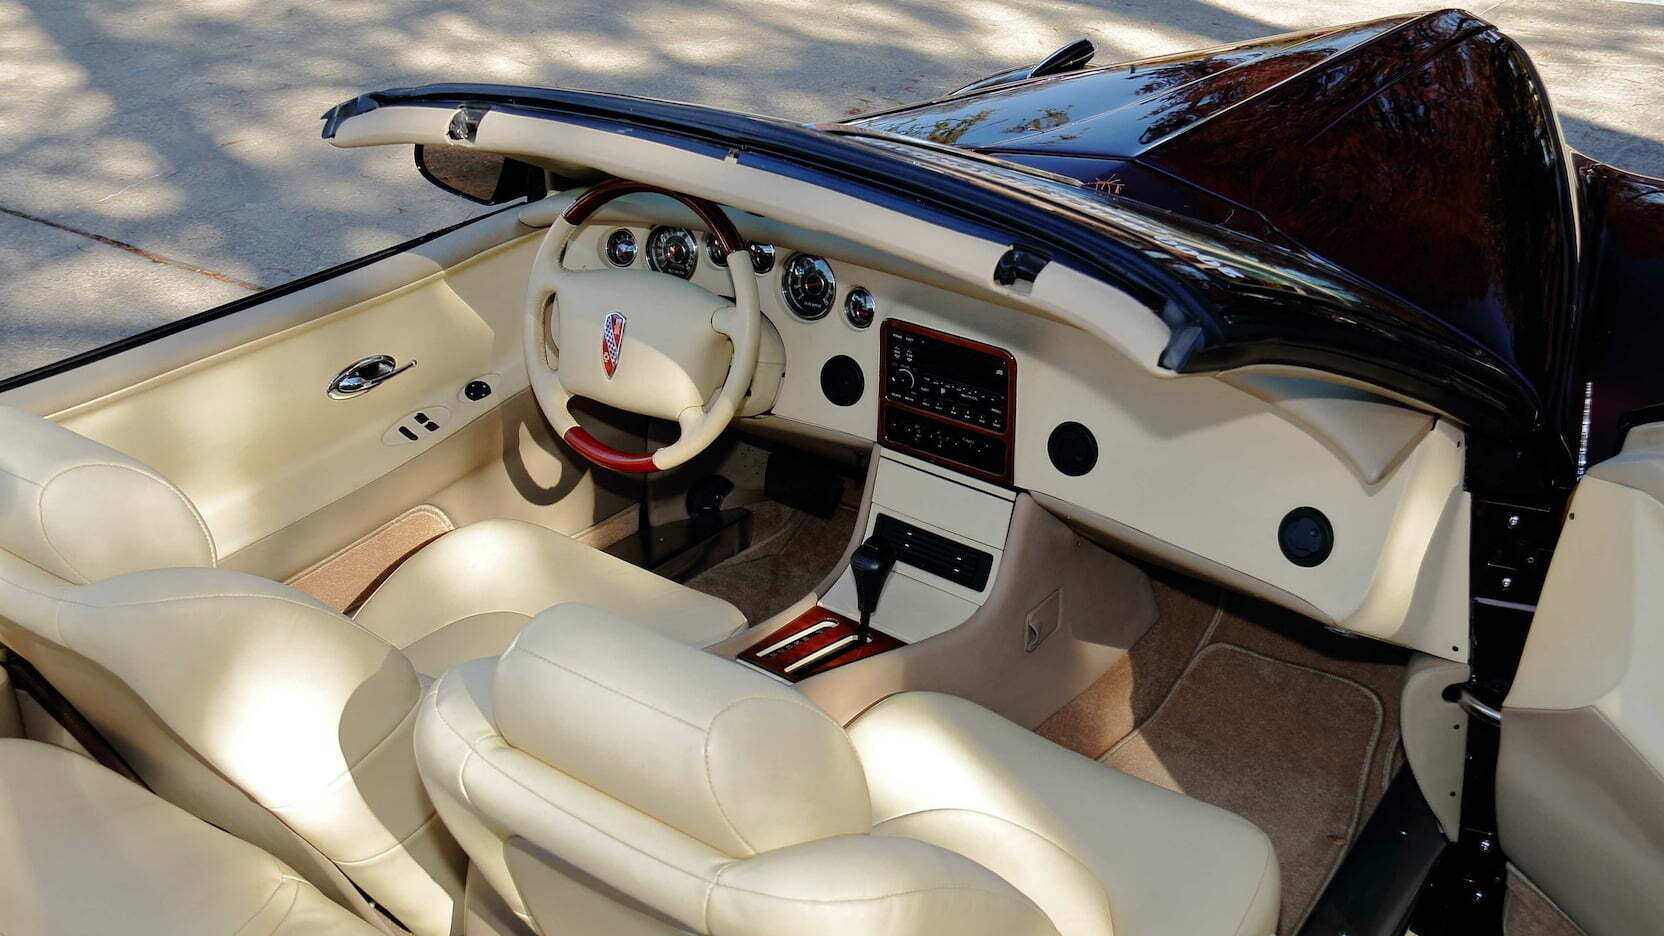 Салон концепта позаимствовали у модели Buick Riviera 1996 года